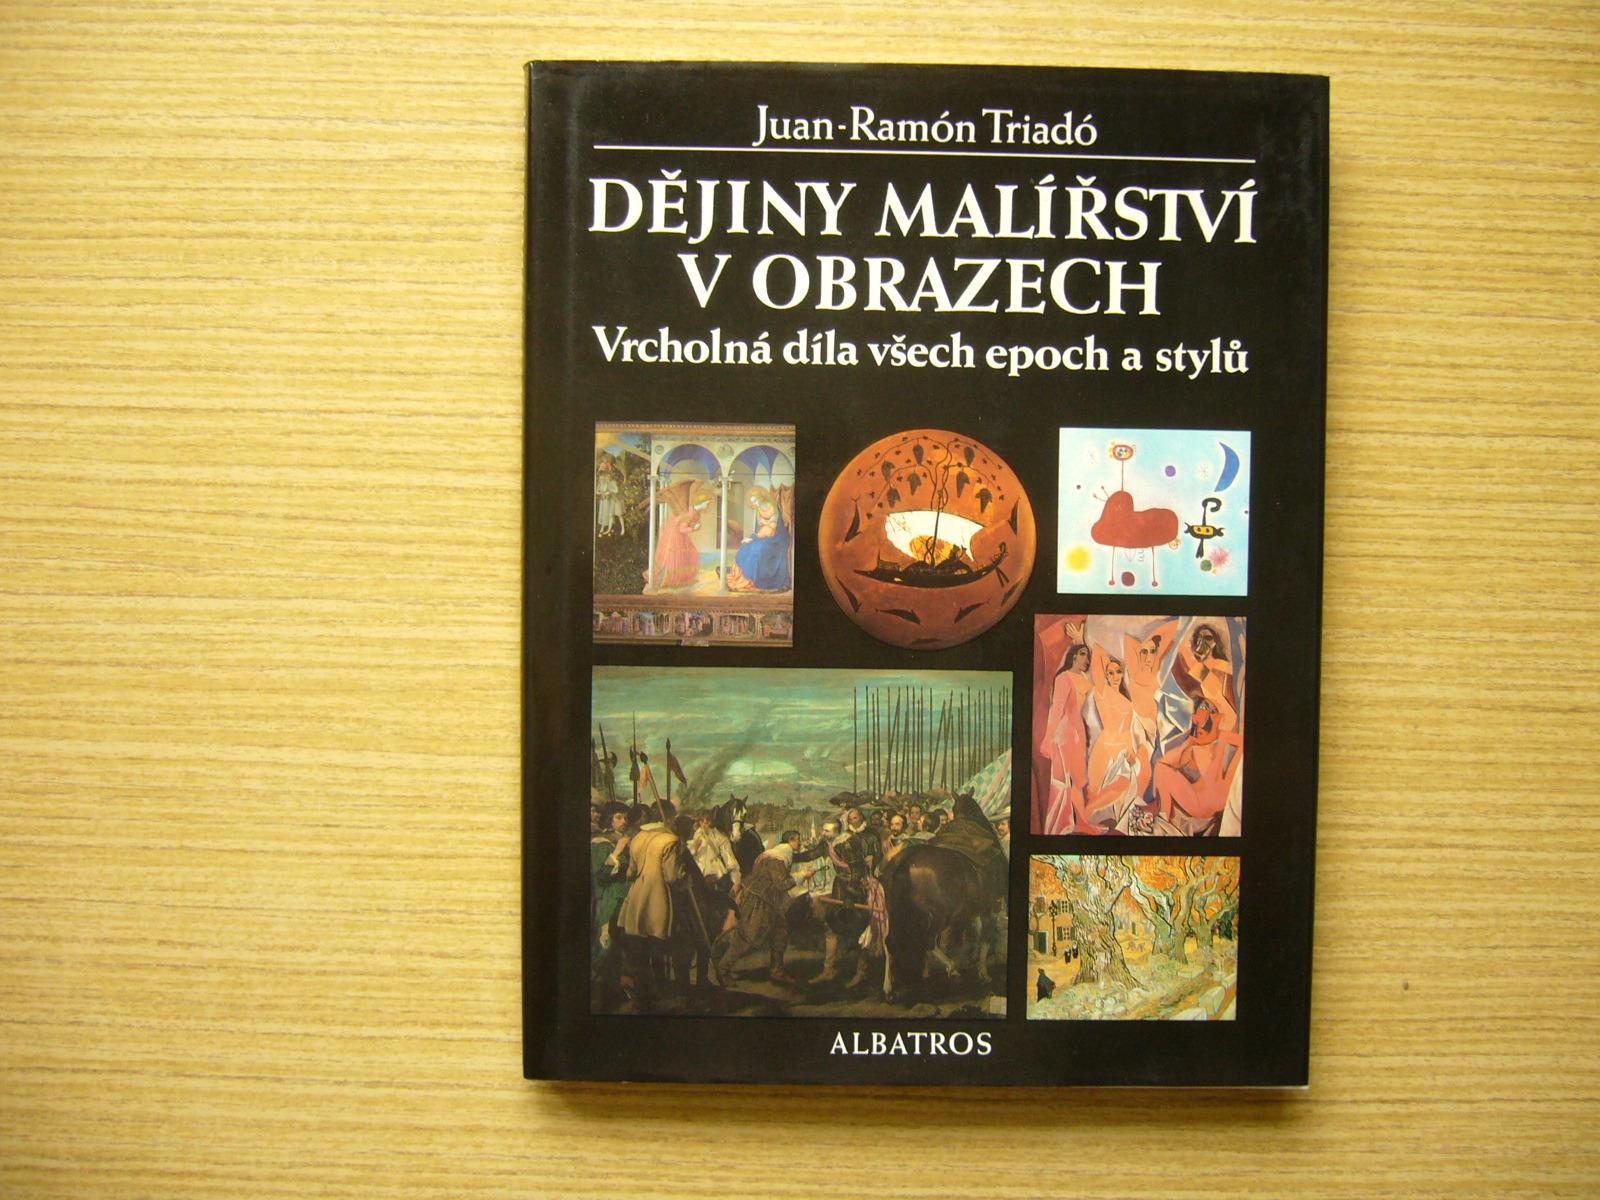 Juan-Ramón Triadó - Dejiny maliarstva v obrazoch | 1994 -a - Knihy